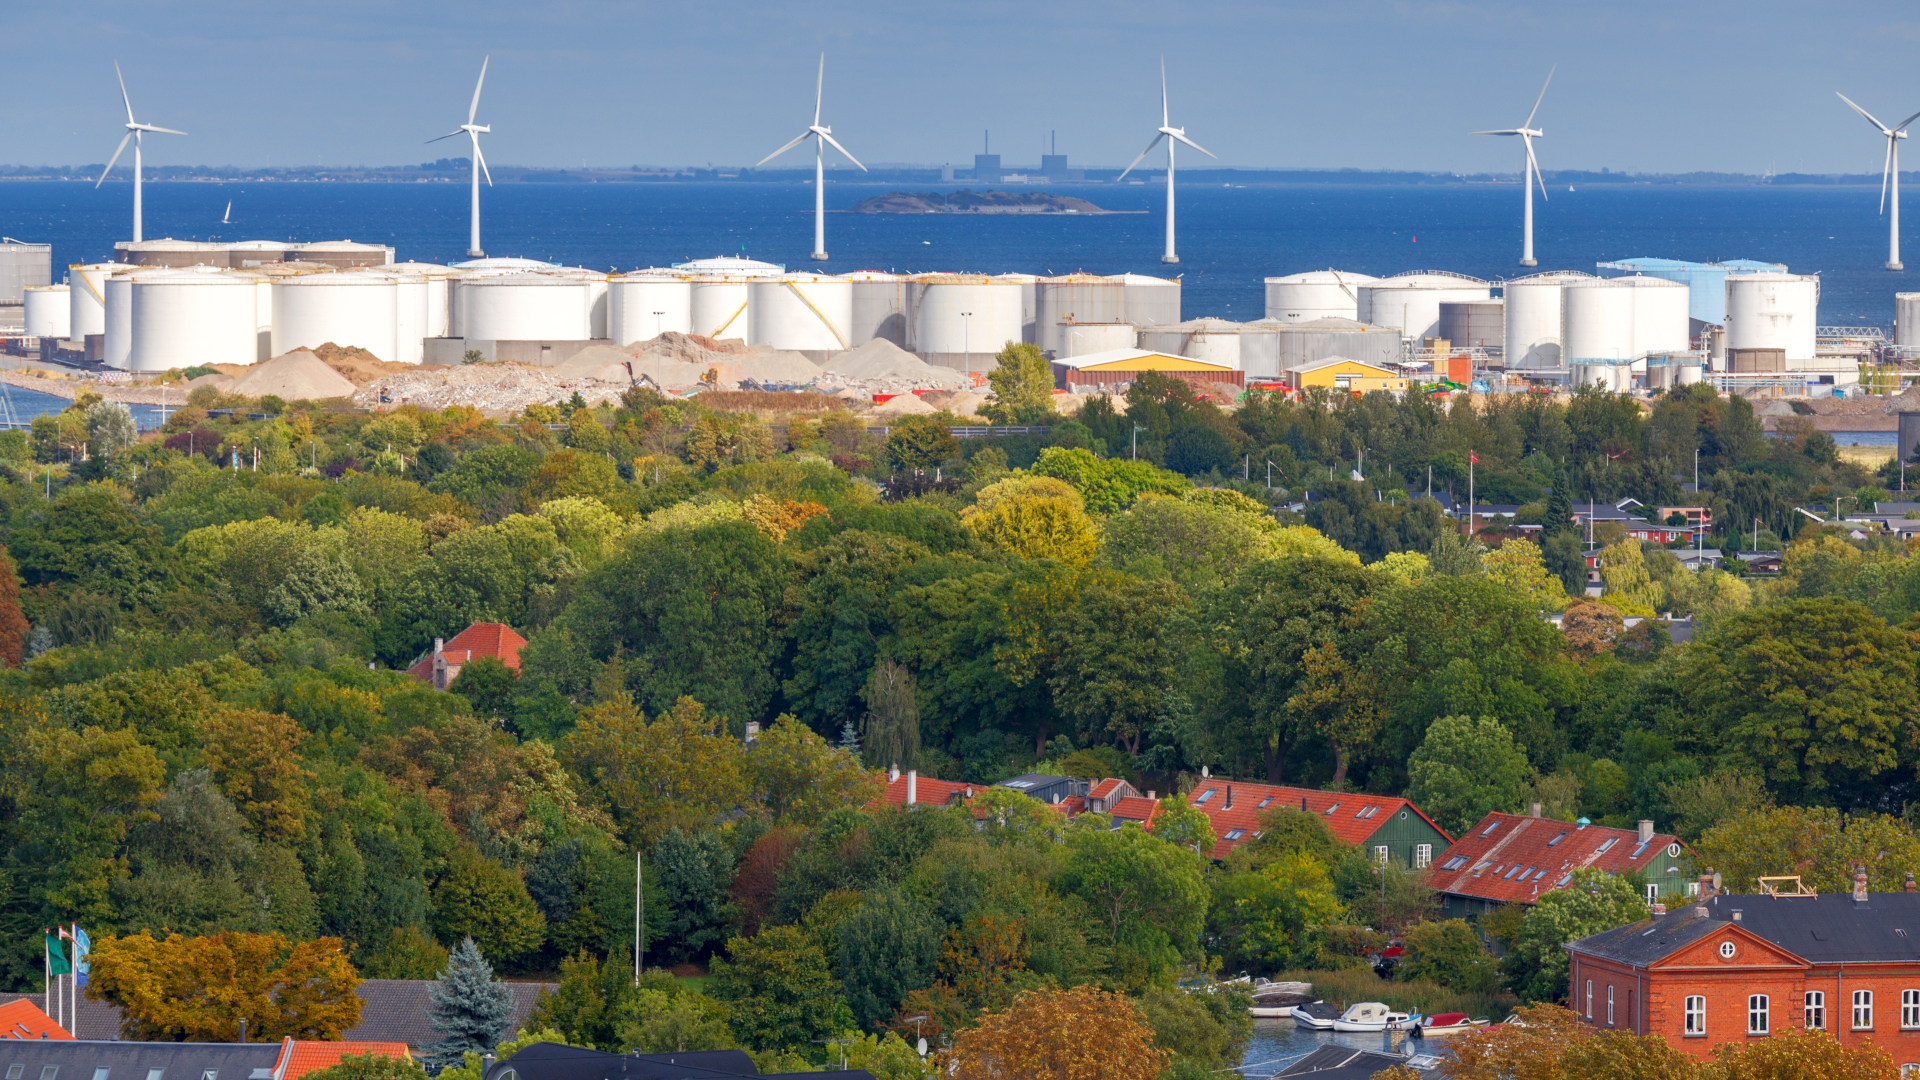 Regeringen lægger i nyt energiudspil op til en grøn omstilling af industrien i Danmark. Det kan lade sig gøre, men kræver gennemtænkte løsninger, skriver professor Brian Elmegaard i debatindlæg. (Foto: Colourbox)